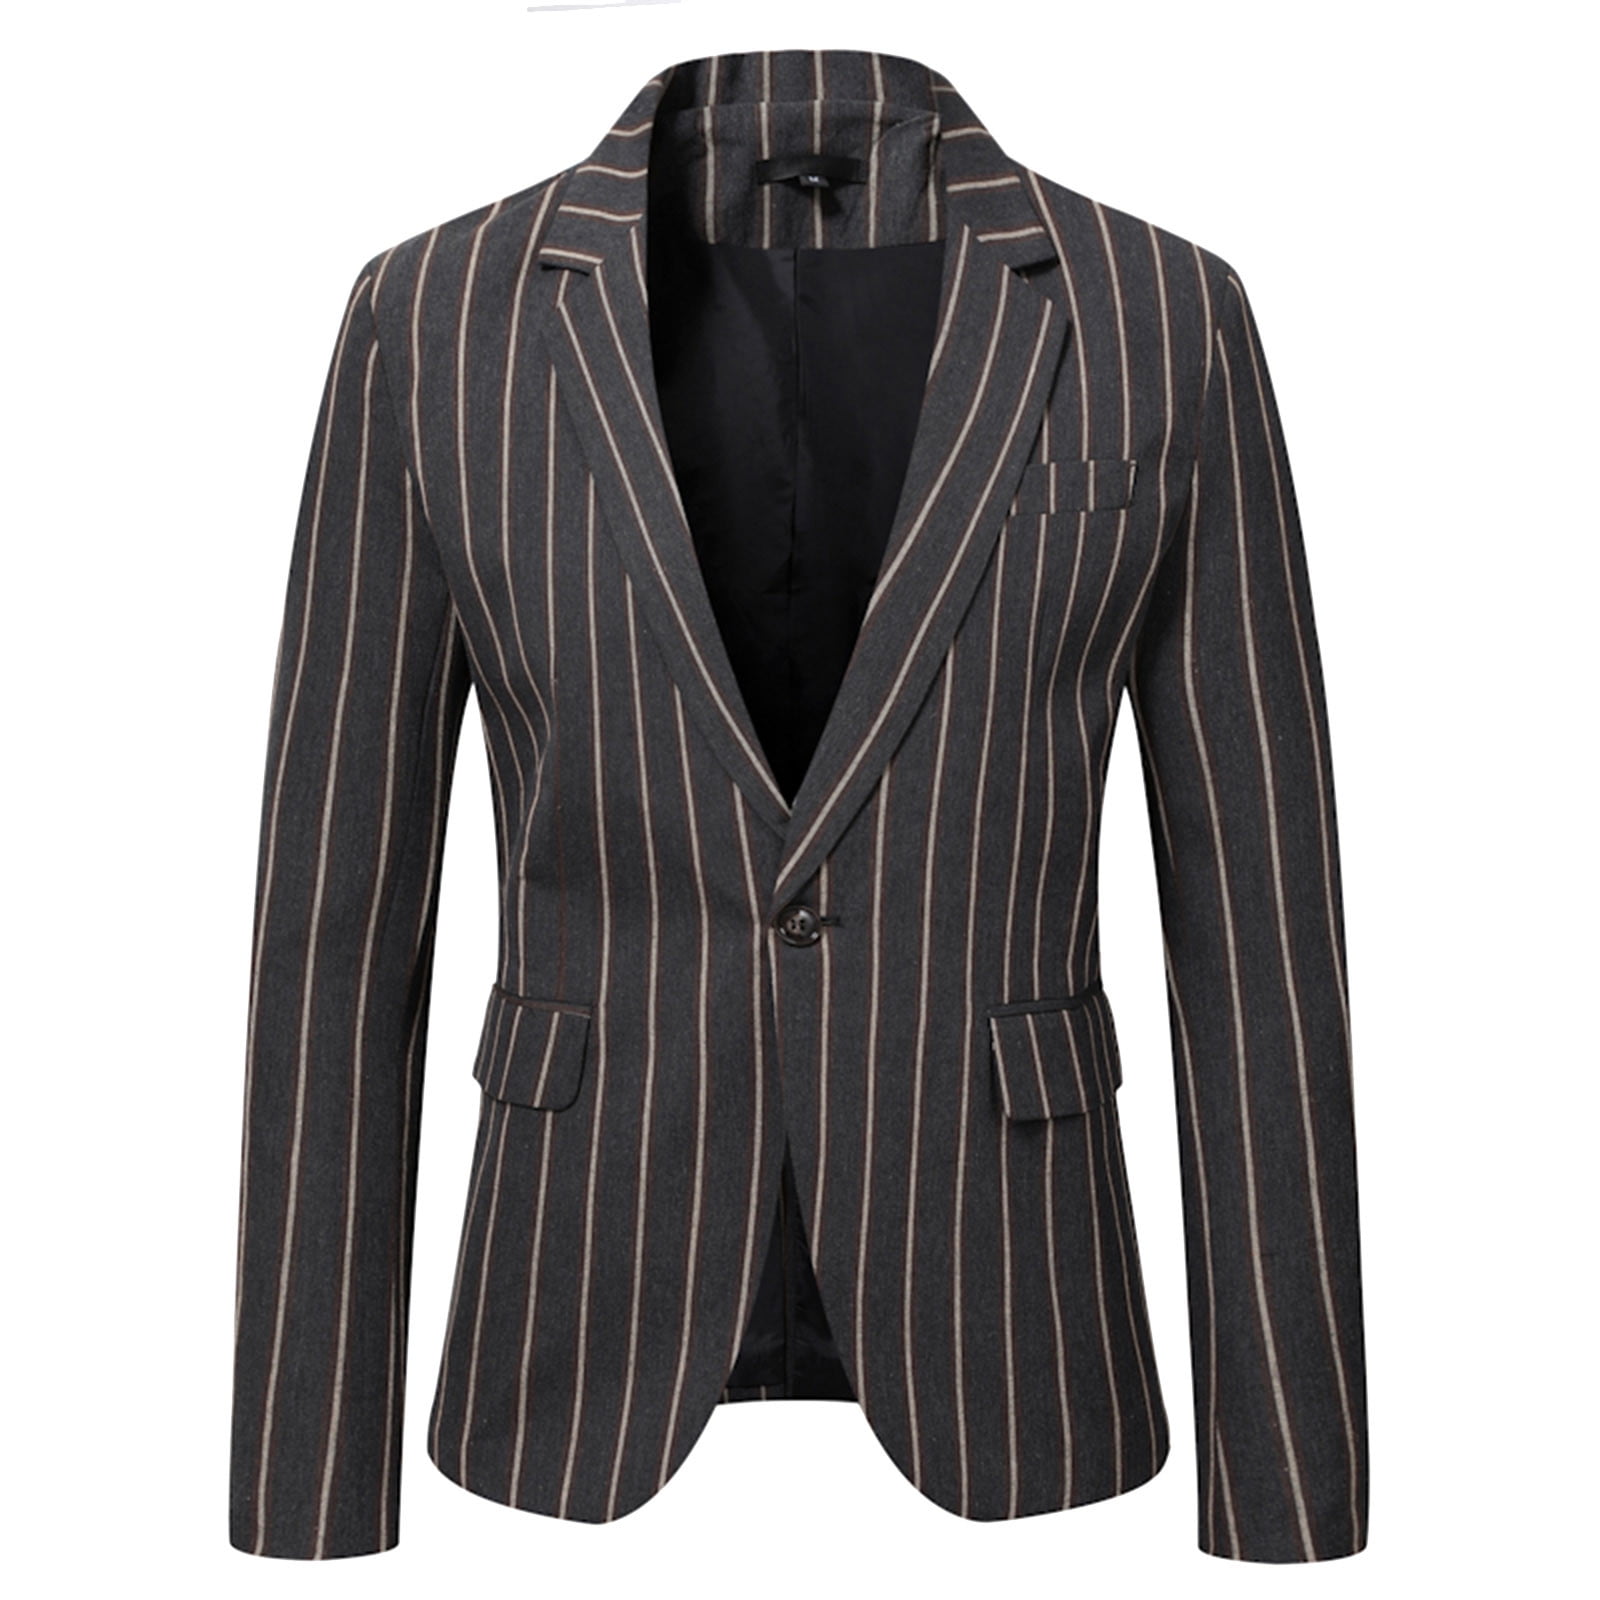 Larisalt Blazer For Men Slim Fit,Men's Floral Tuxedo Paisley Suit ...